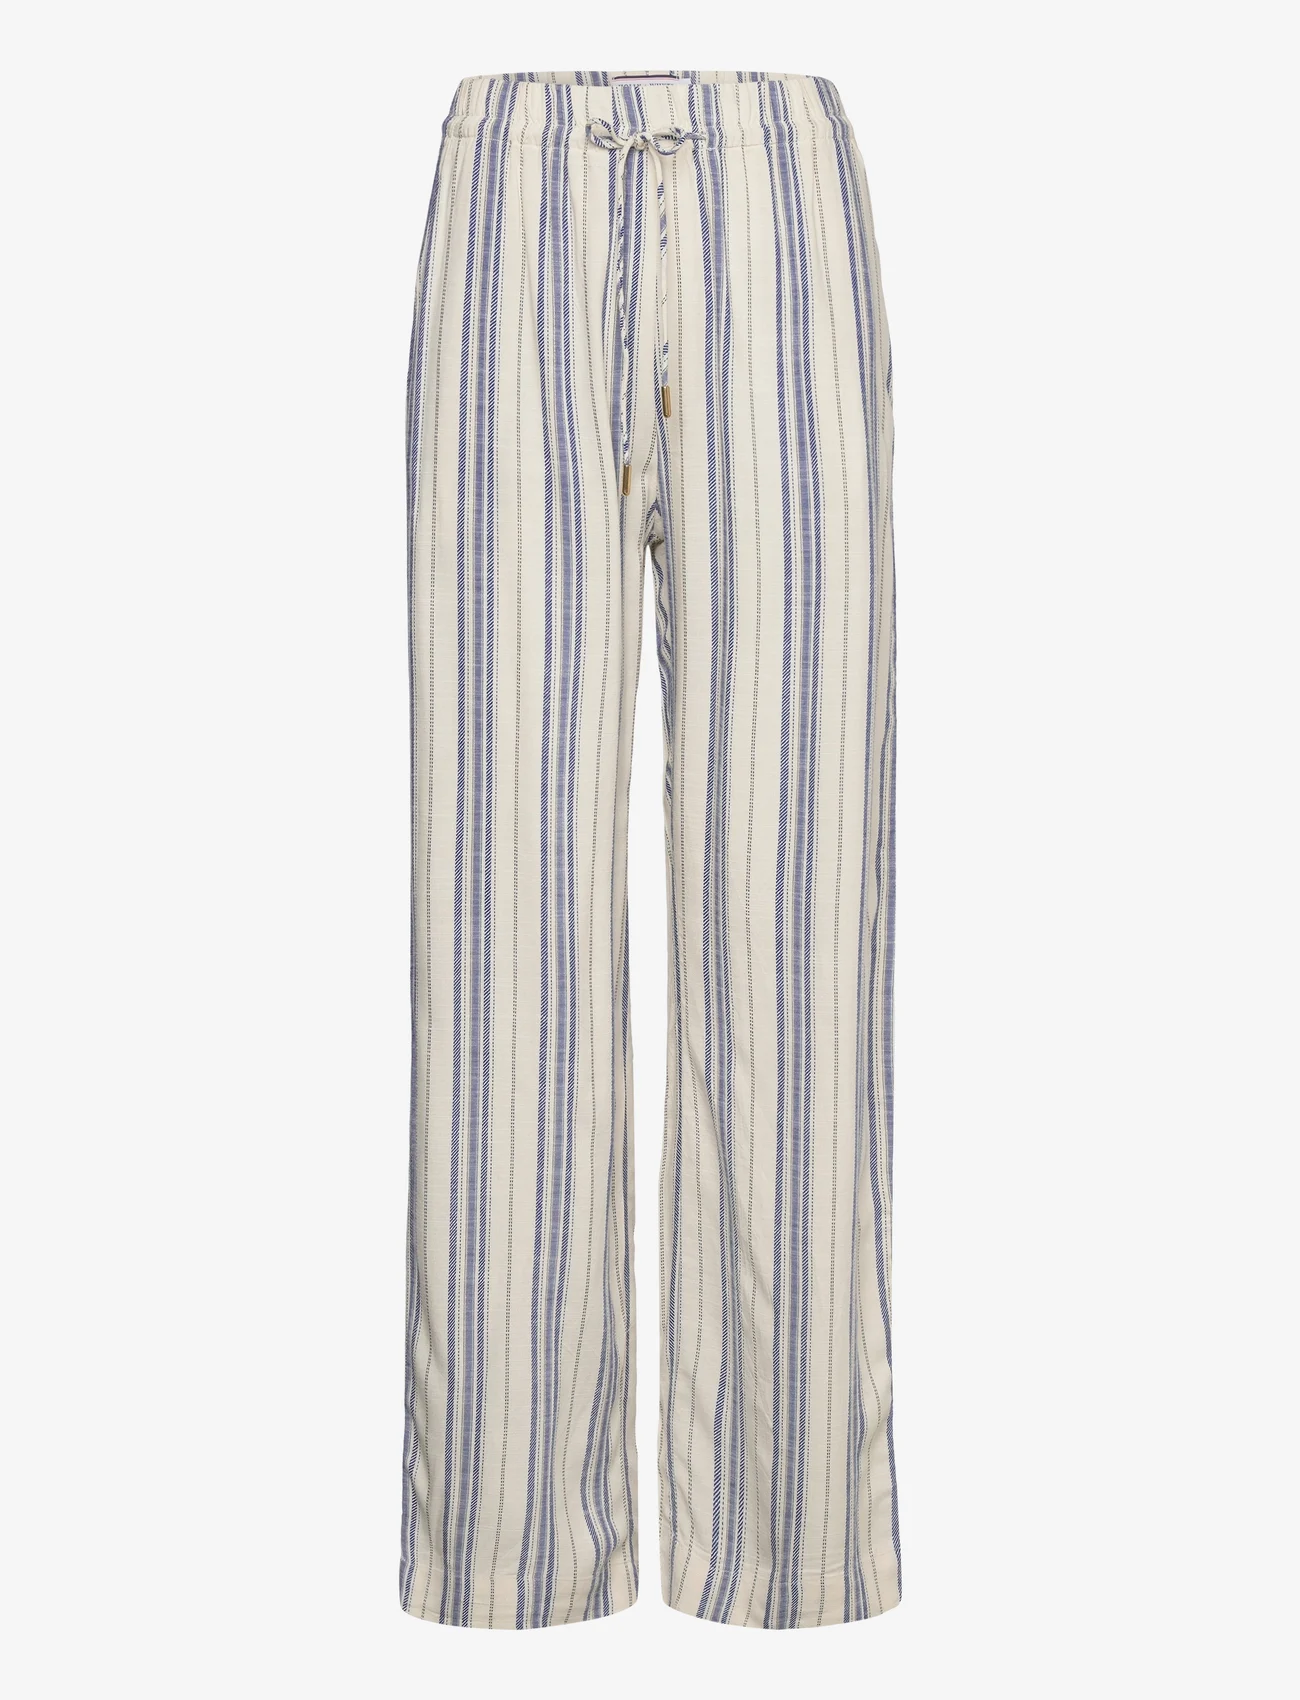 Lindex - Trousers Bella stripe - najniższe ceny - off white - 0